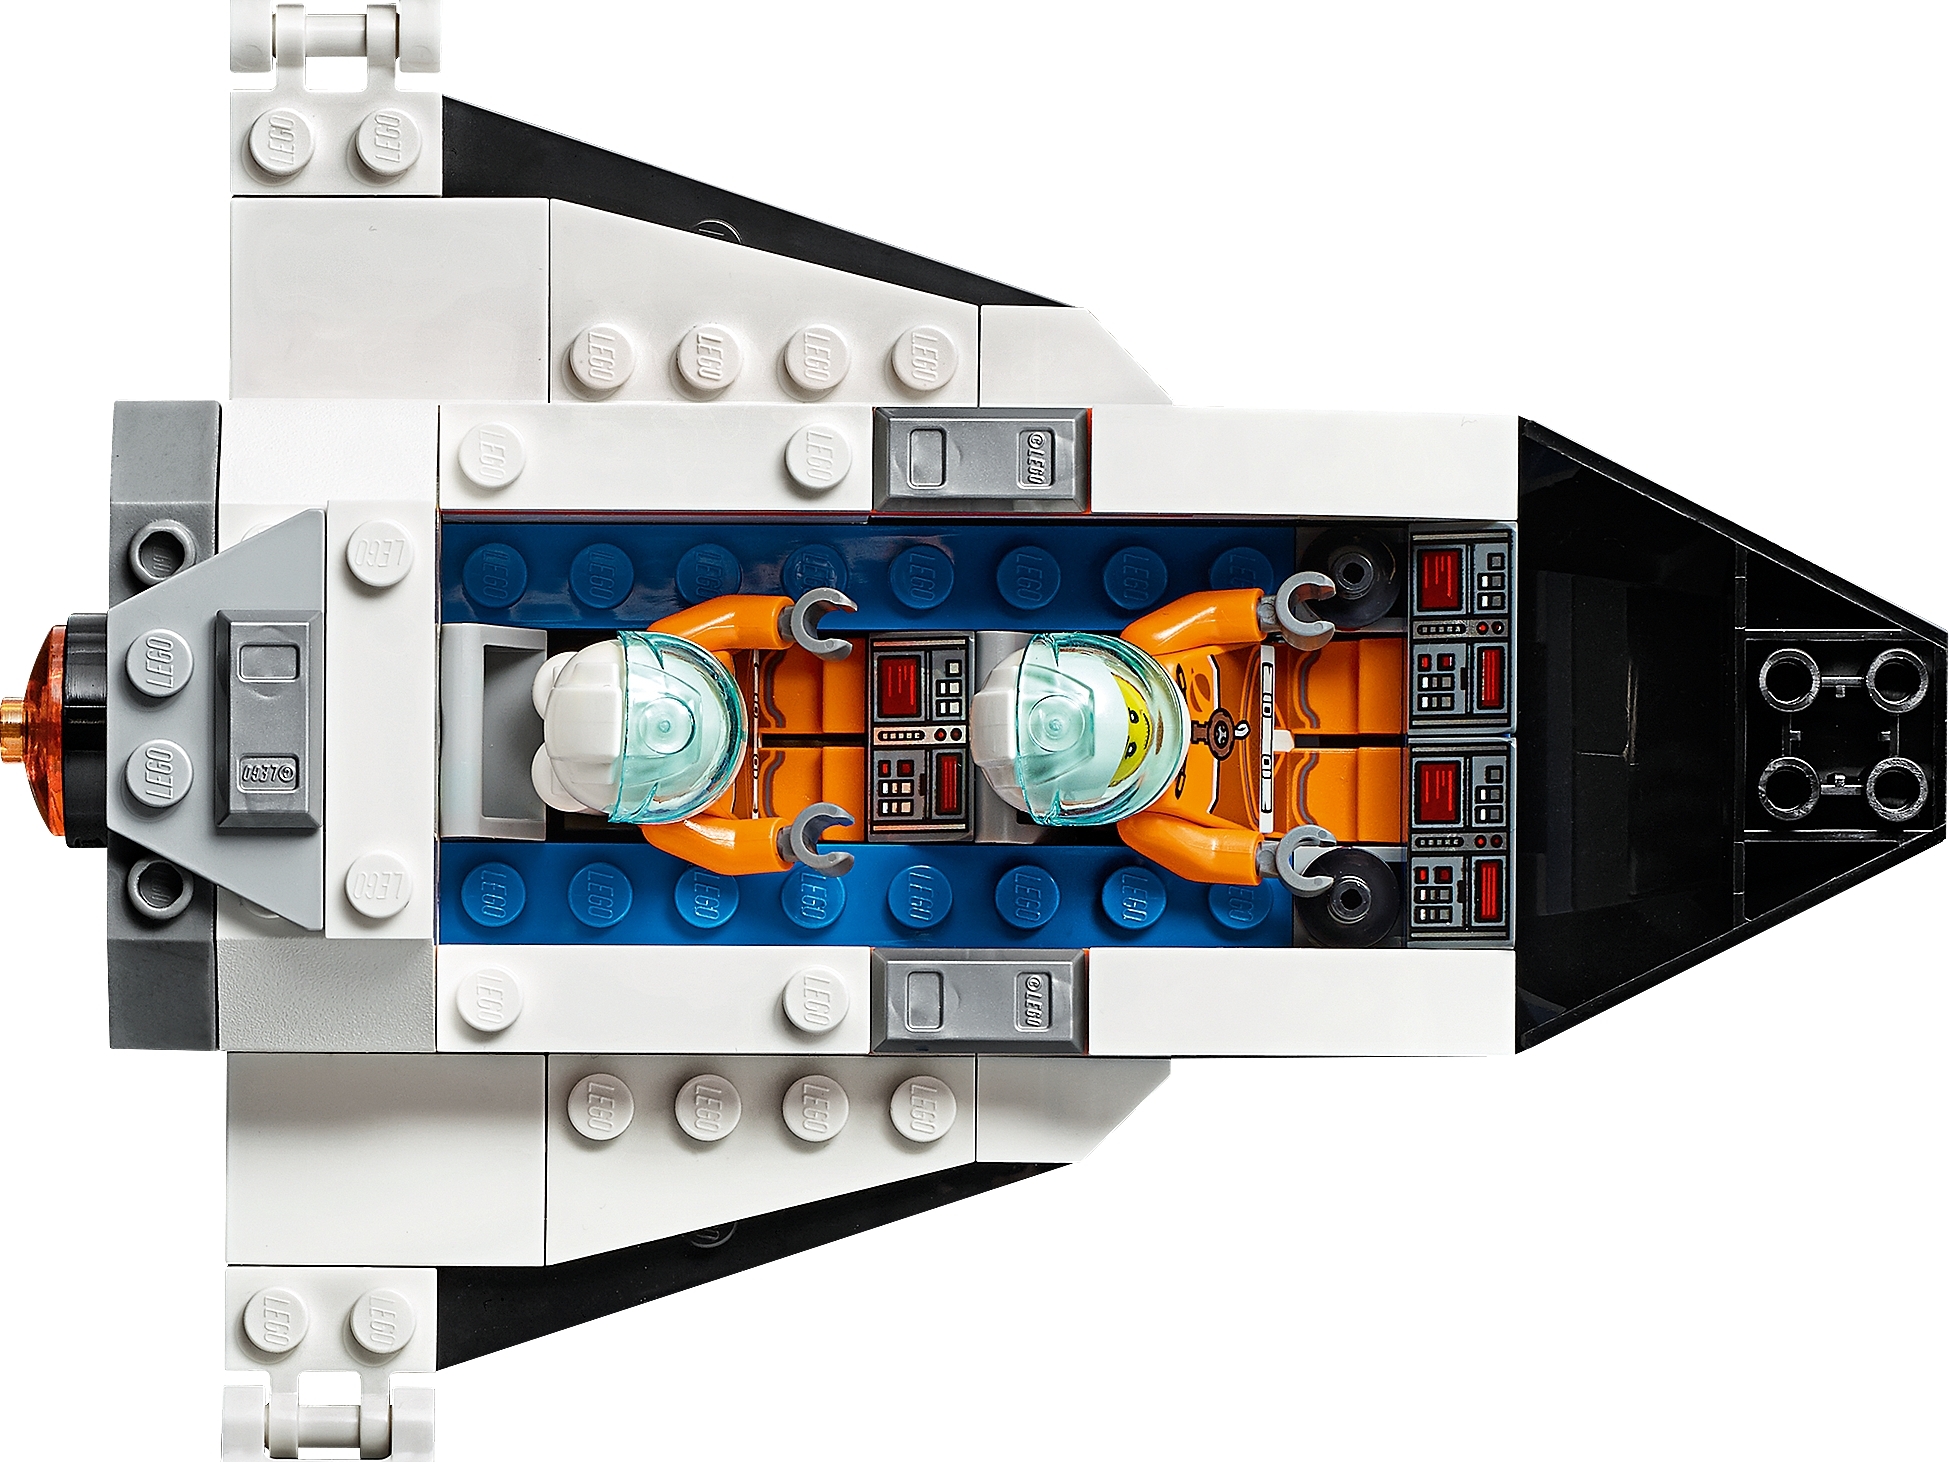 regiment Empirisk redde Rocket Assembly & Transport 60229 | City | Buy online at the Official LEGO®  Shop US